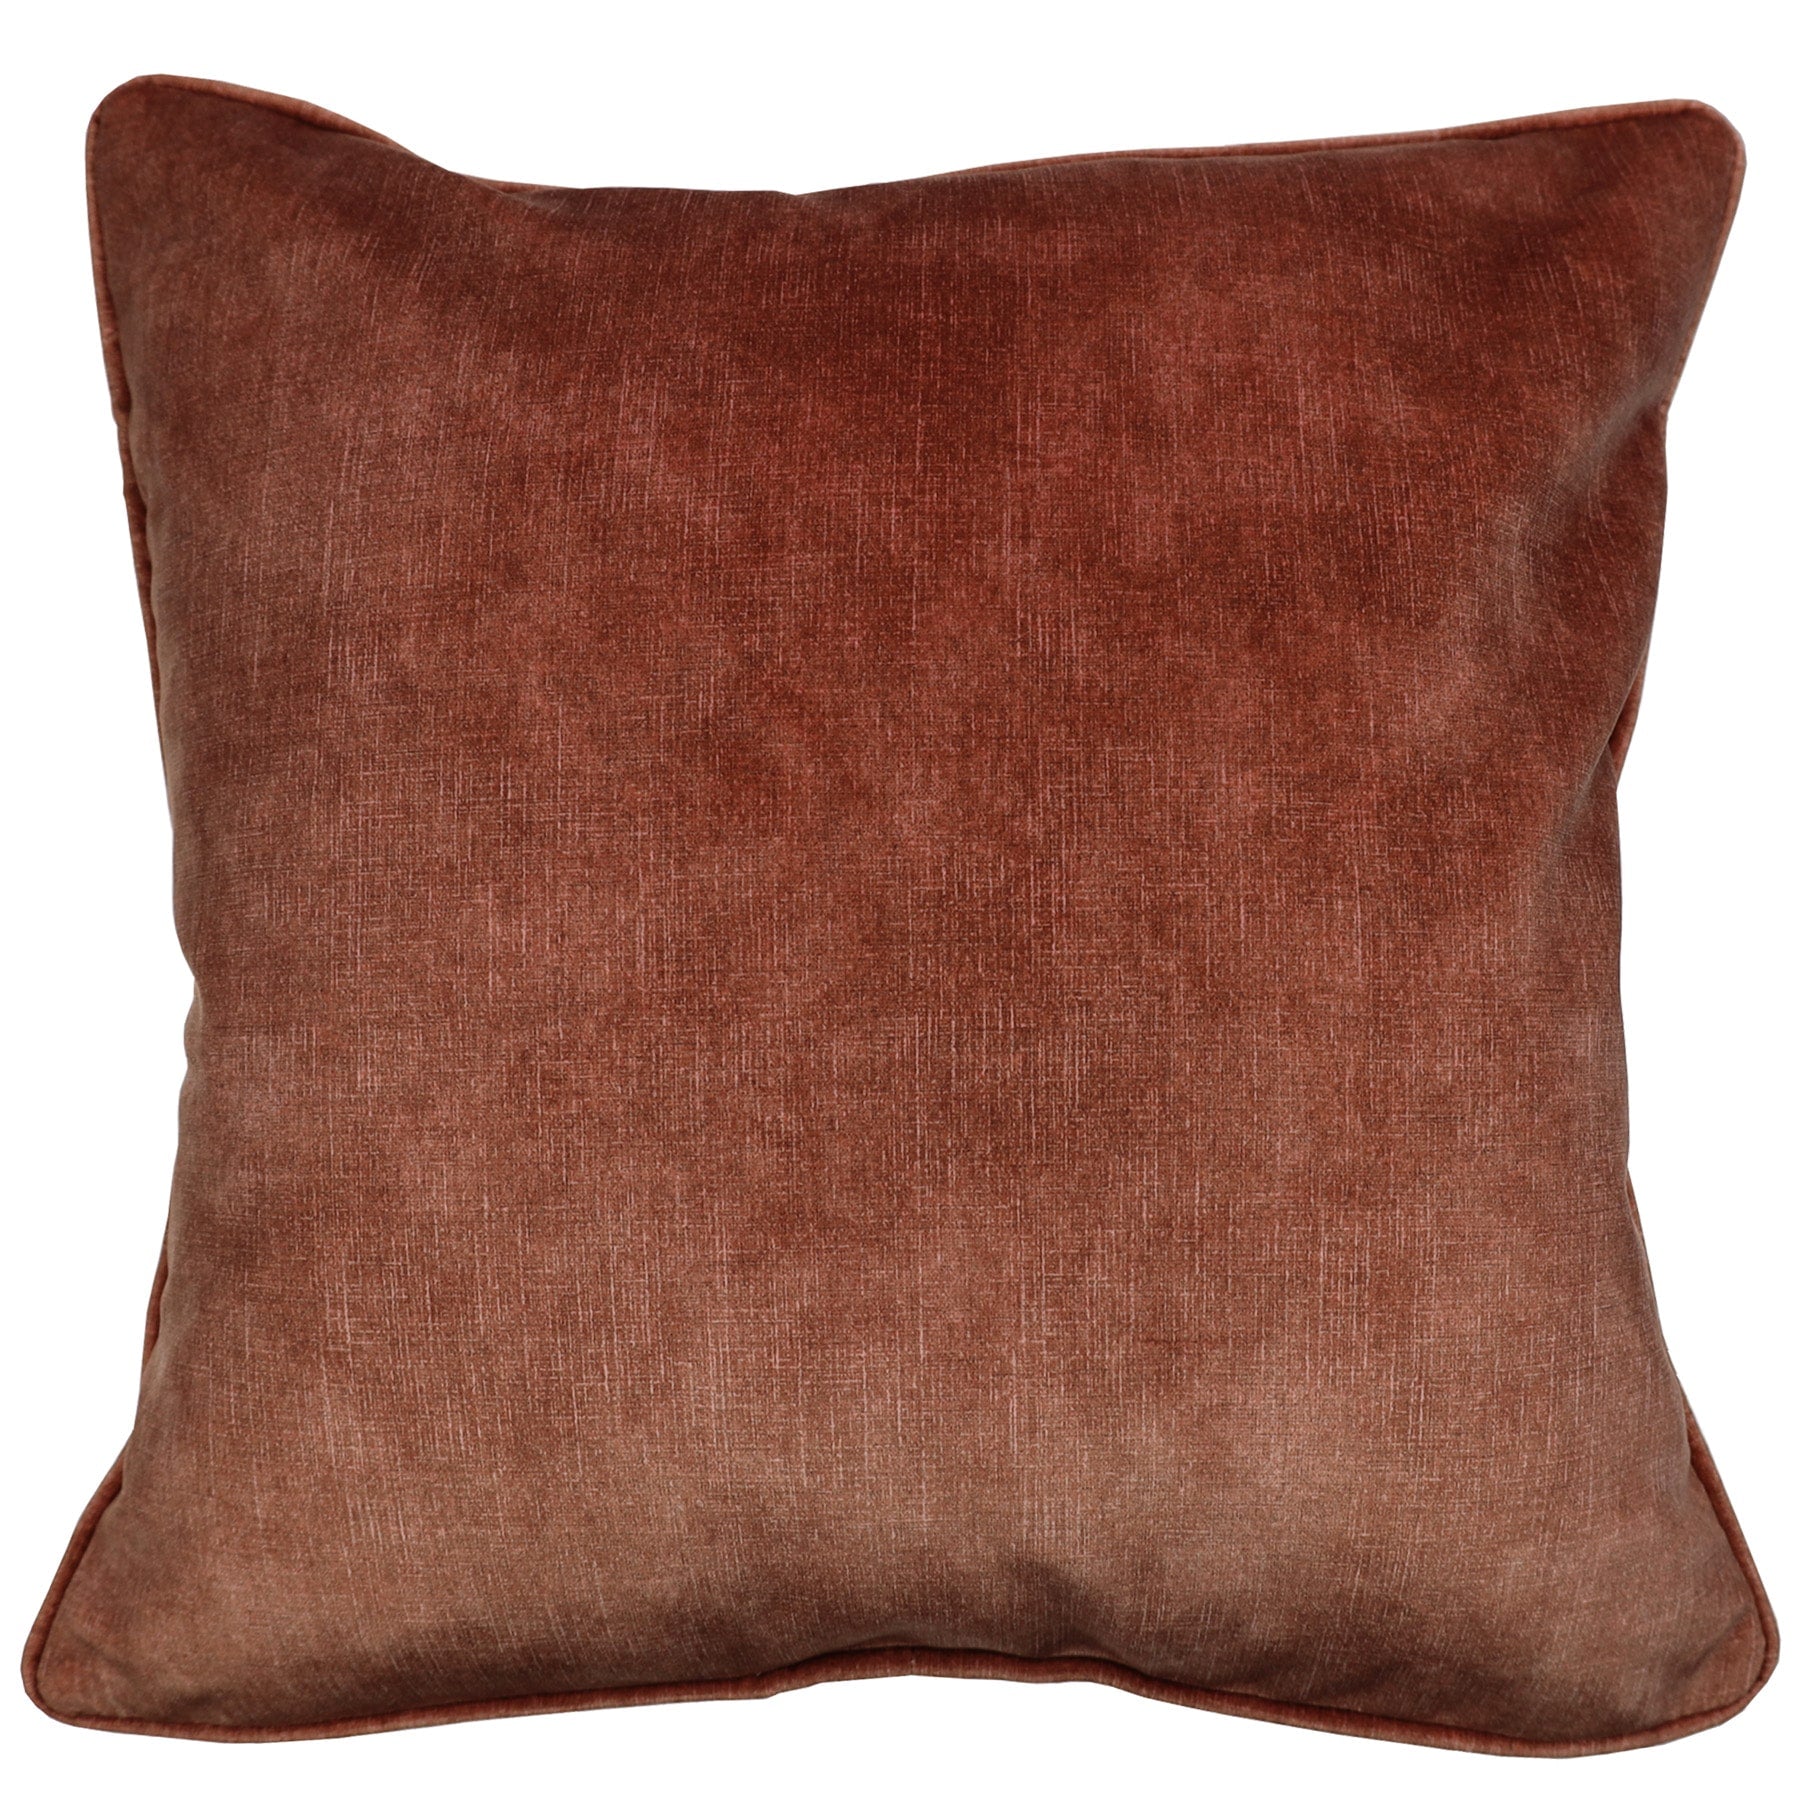 Spice coloured velvet cushion